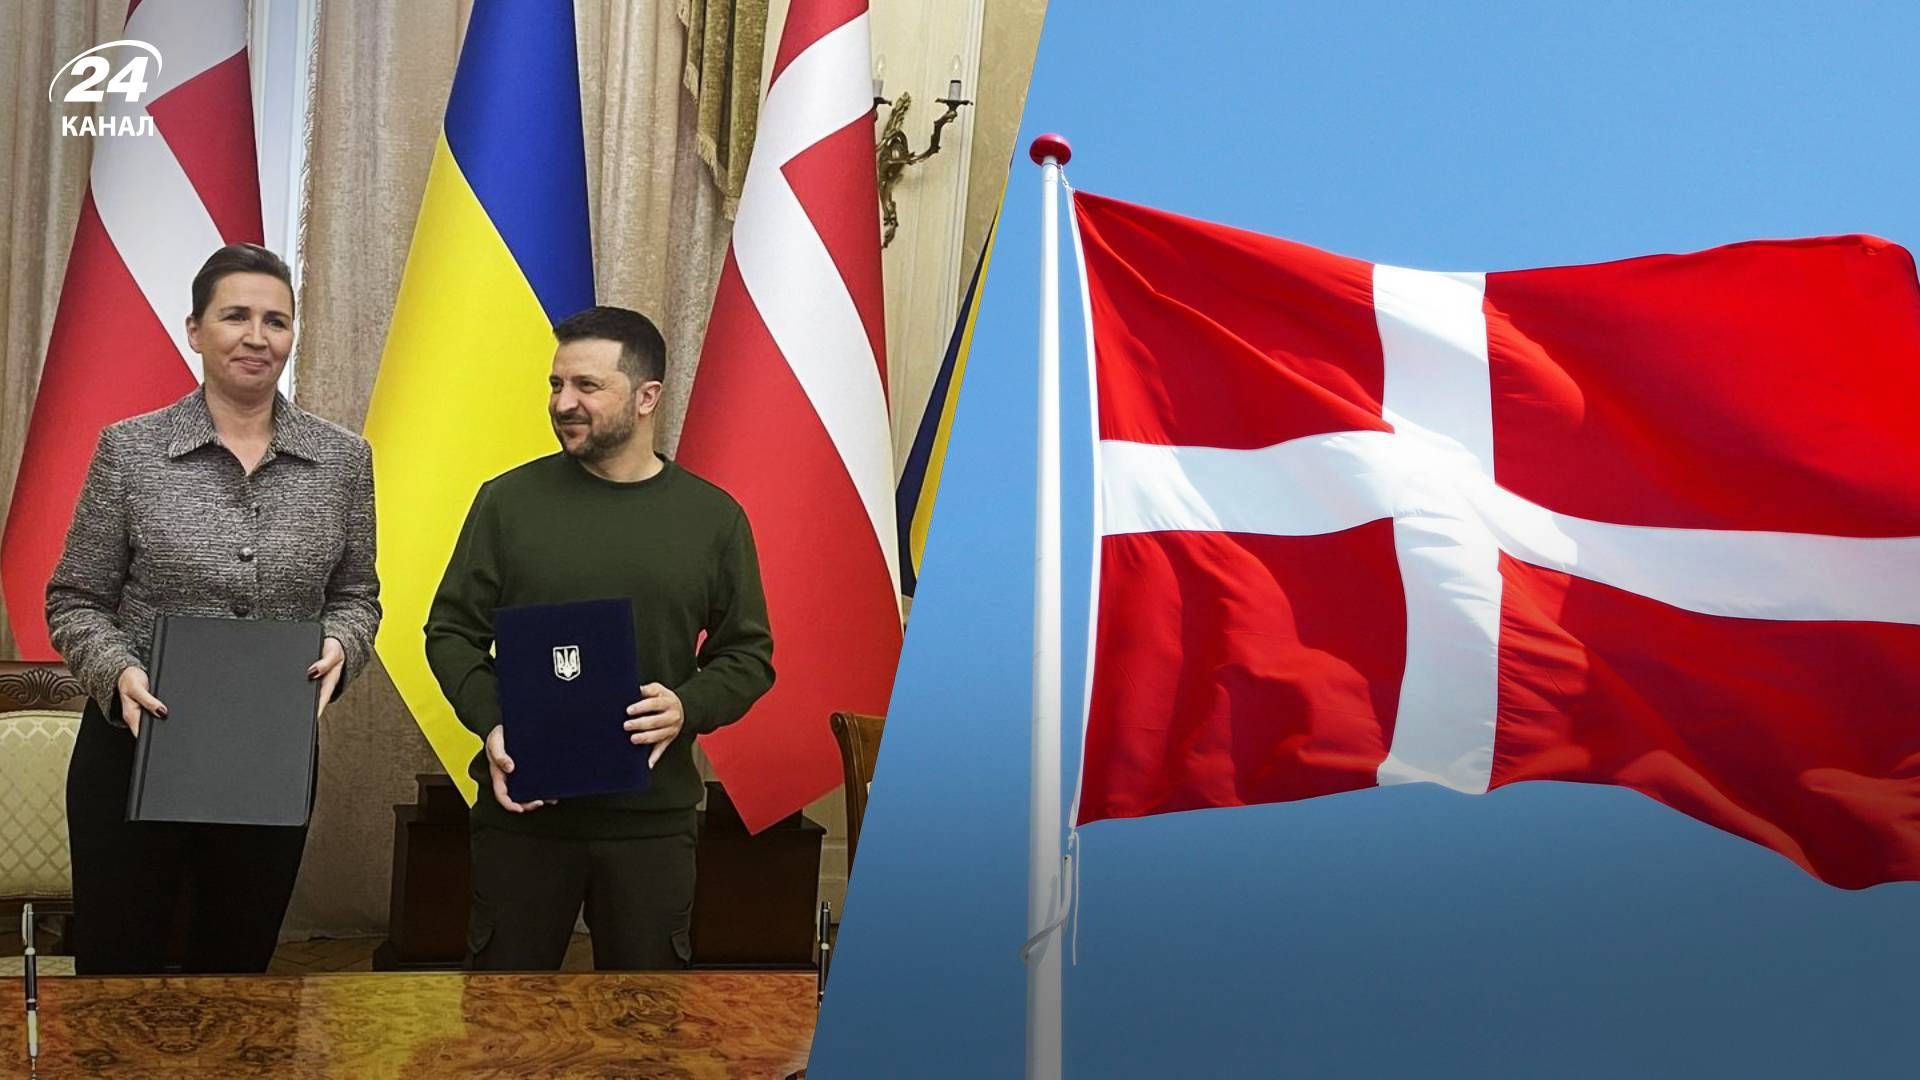 Метте Фредеріксен розповіла про безпекову угоду між Данією та Україною - 24 Канал